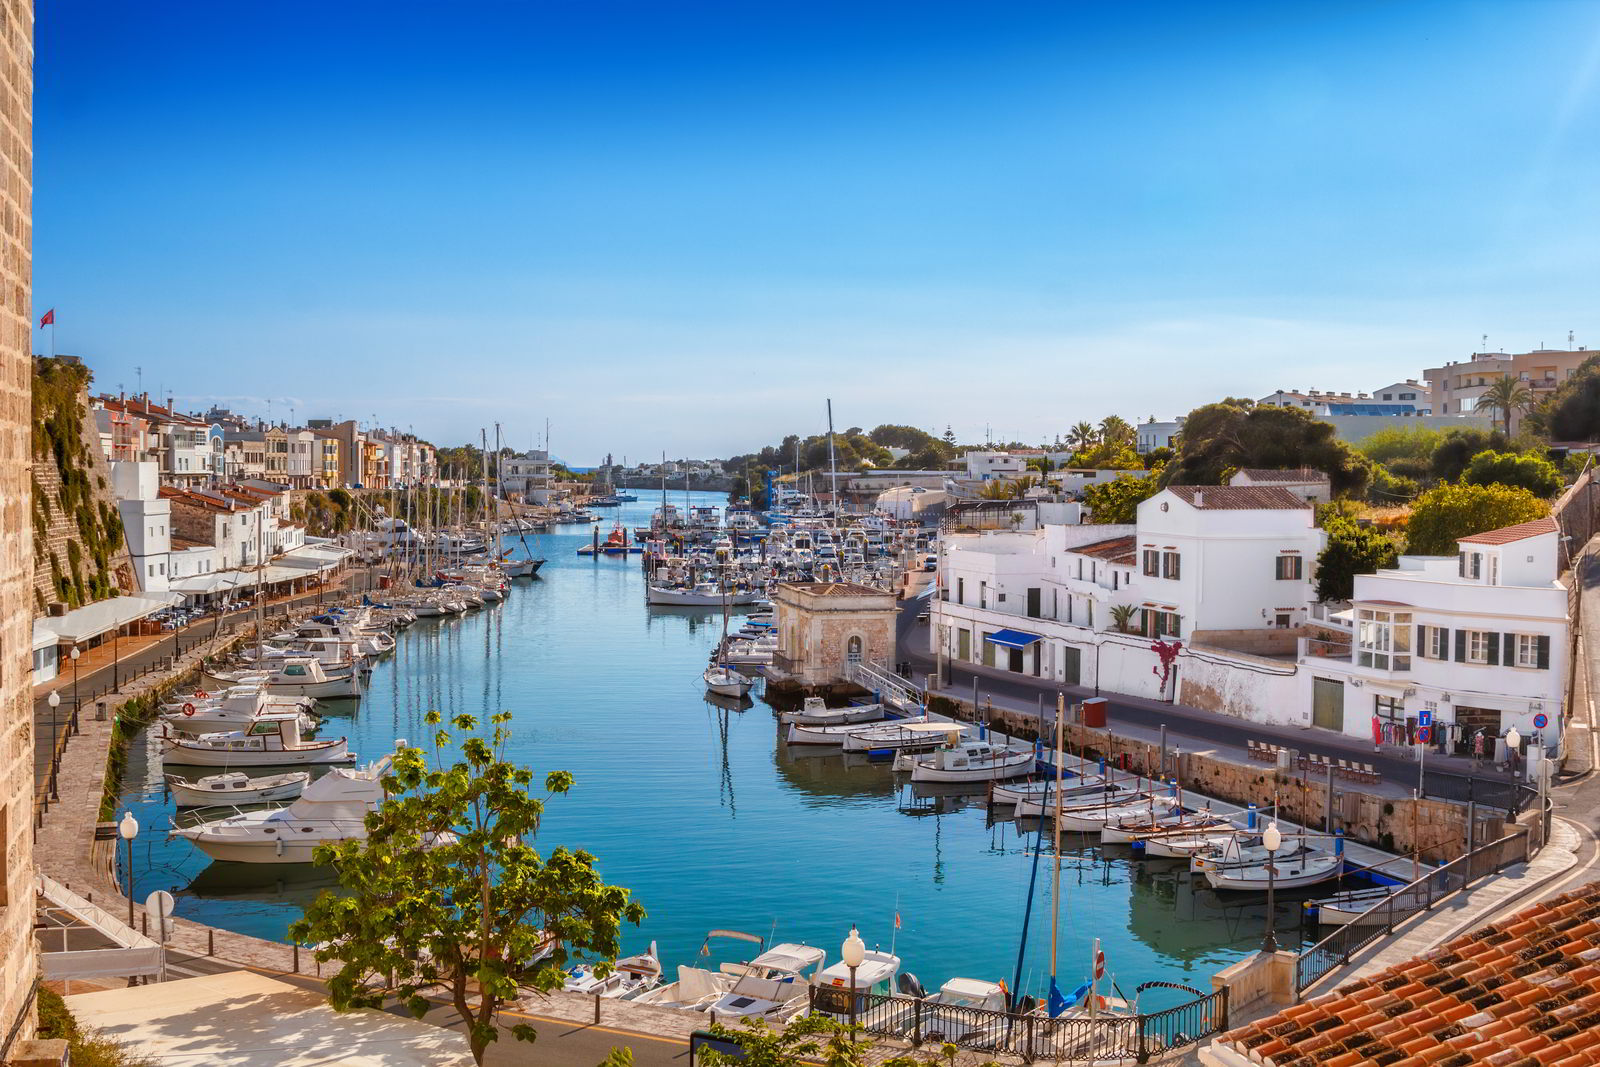 Alquiler de coches baratos en Menorca